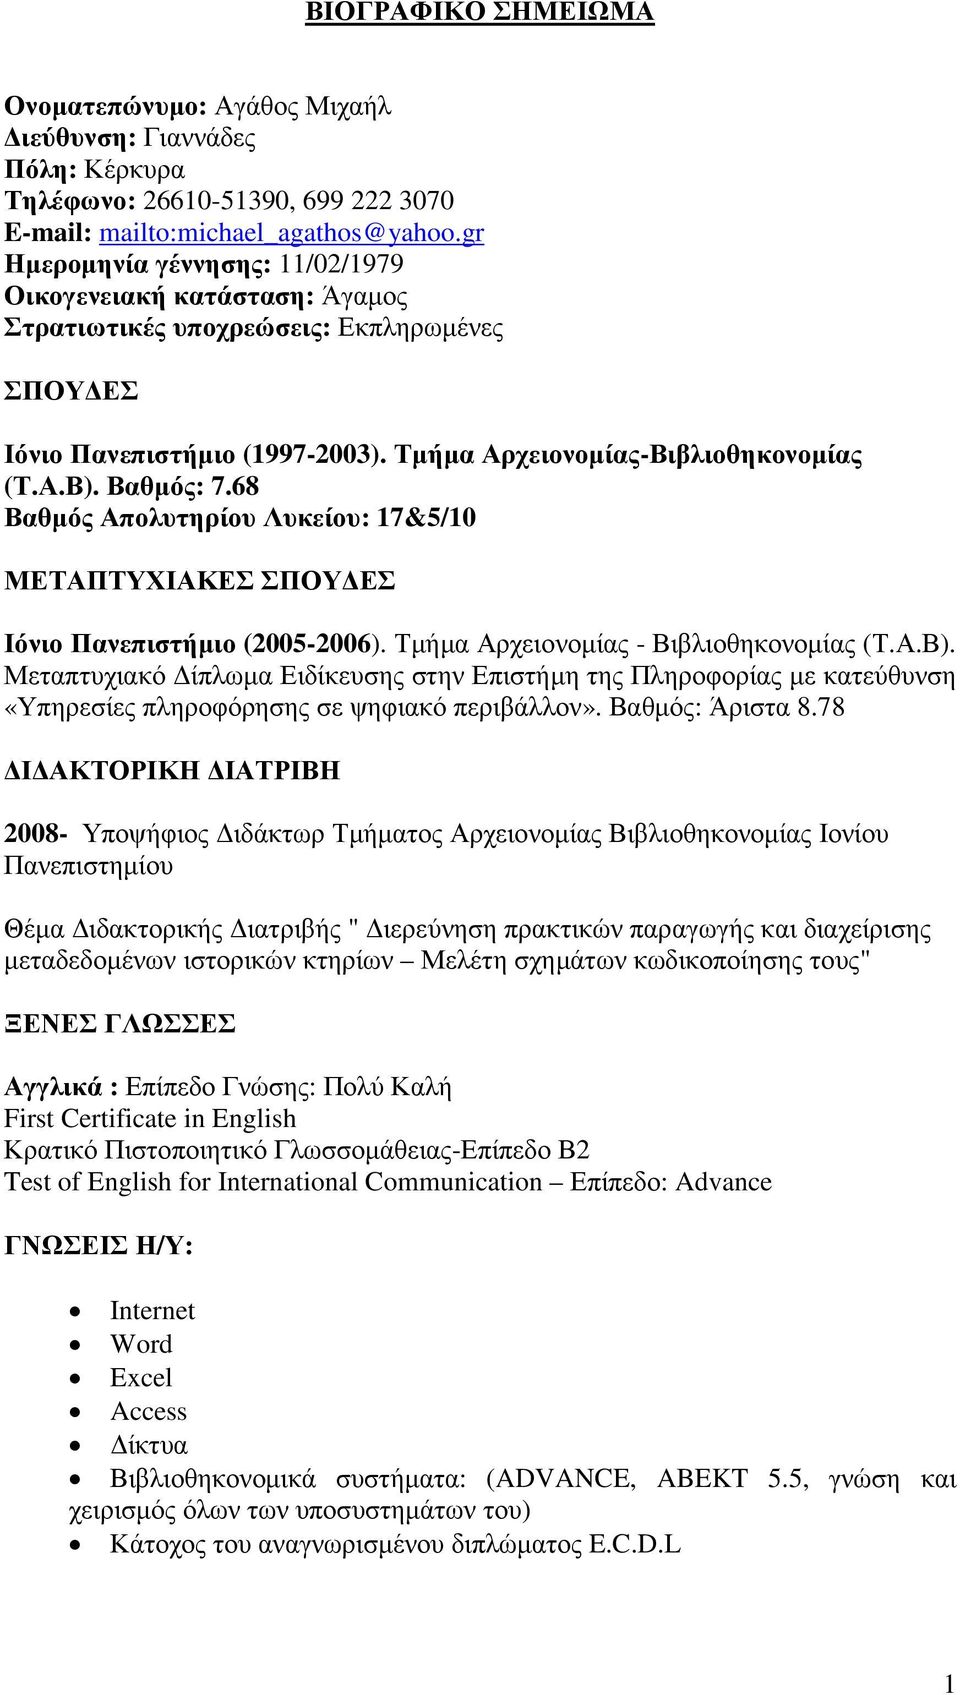 68 Βαθµός Απολυτηρίου Λυκείου: 17&5/10 ΜΕΤΑΠΤΥΧΙΑΚΕΣ ΣΠΟΥ ΕΣ Ιόνιο Πανεπιστήµιο (2005-2006). Τµήµα Αρχειονοµίας - Βιβλιοθηκονοµίας (Τ.Α.Β).